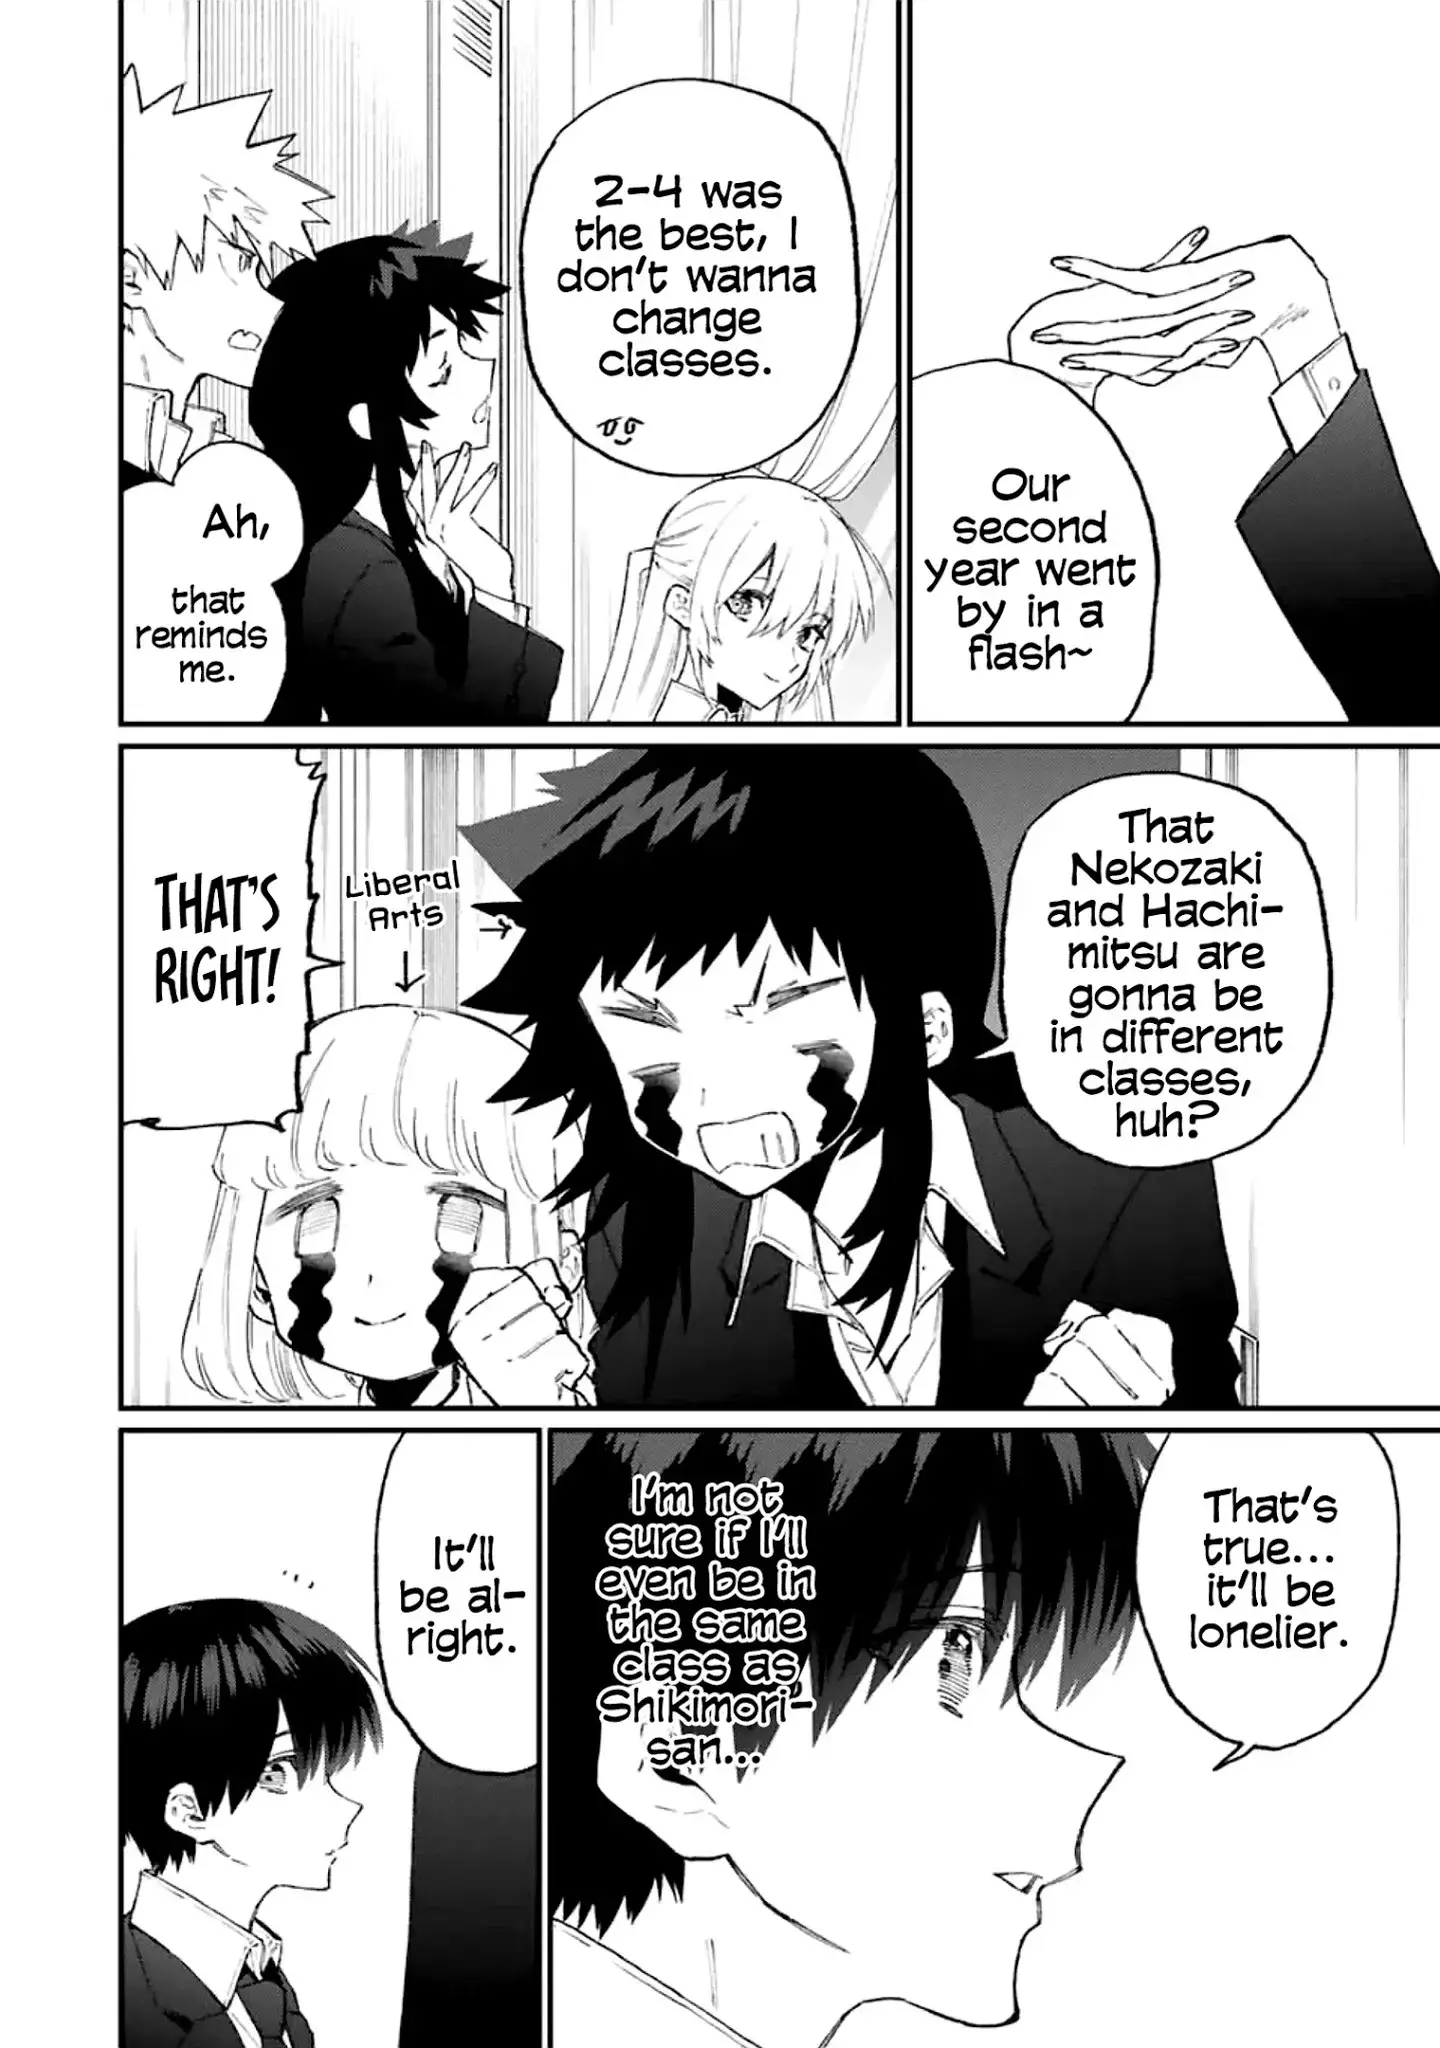 Shikimori's Not Just A Cutie - 115 page 5